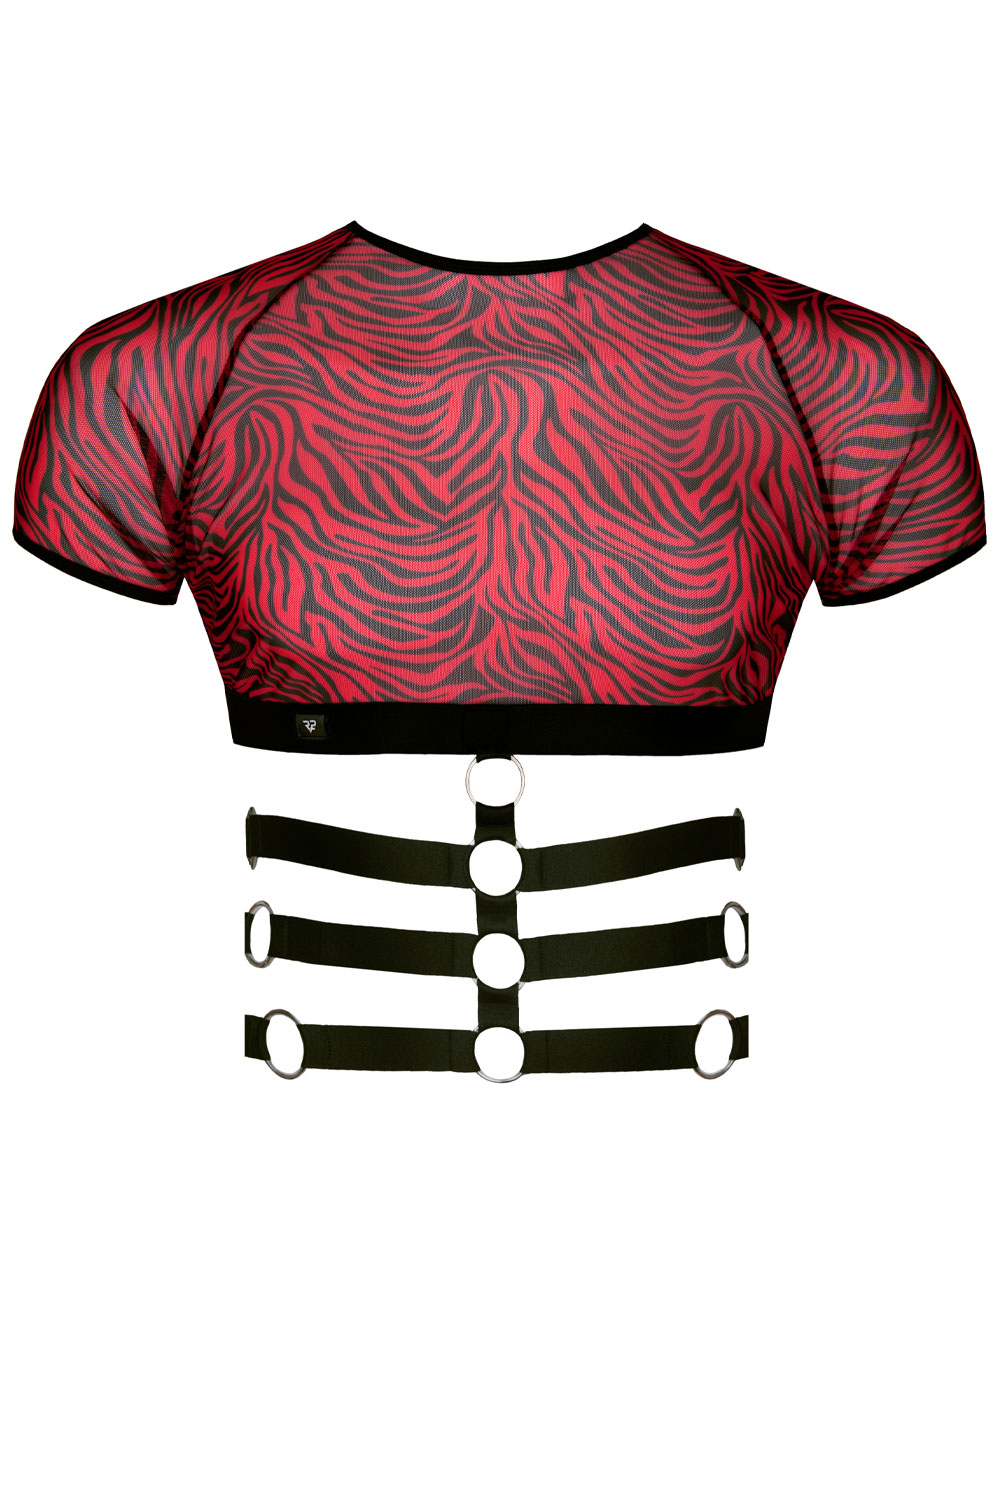 Harness T-Shirt in Schwarz/Rot von Regnes Fetish Planet , Gaywear Fashion